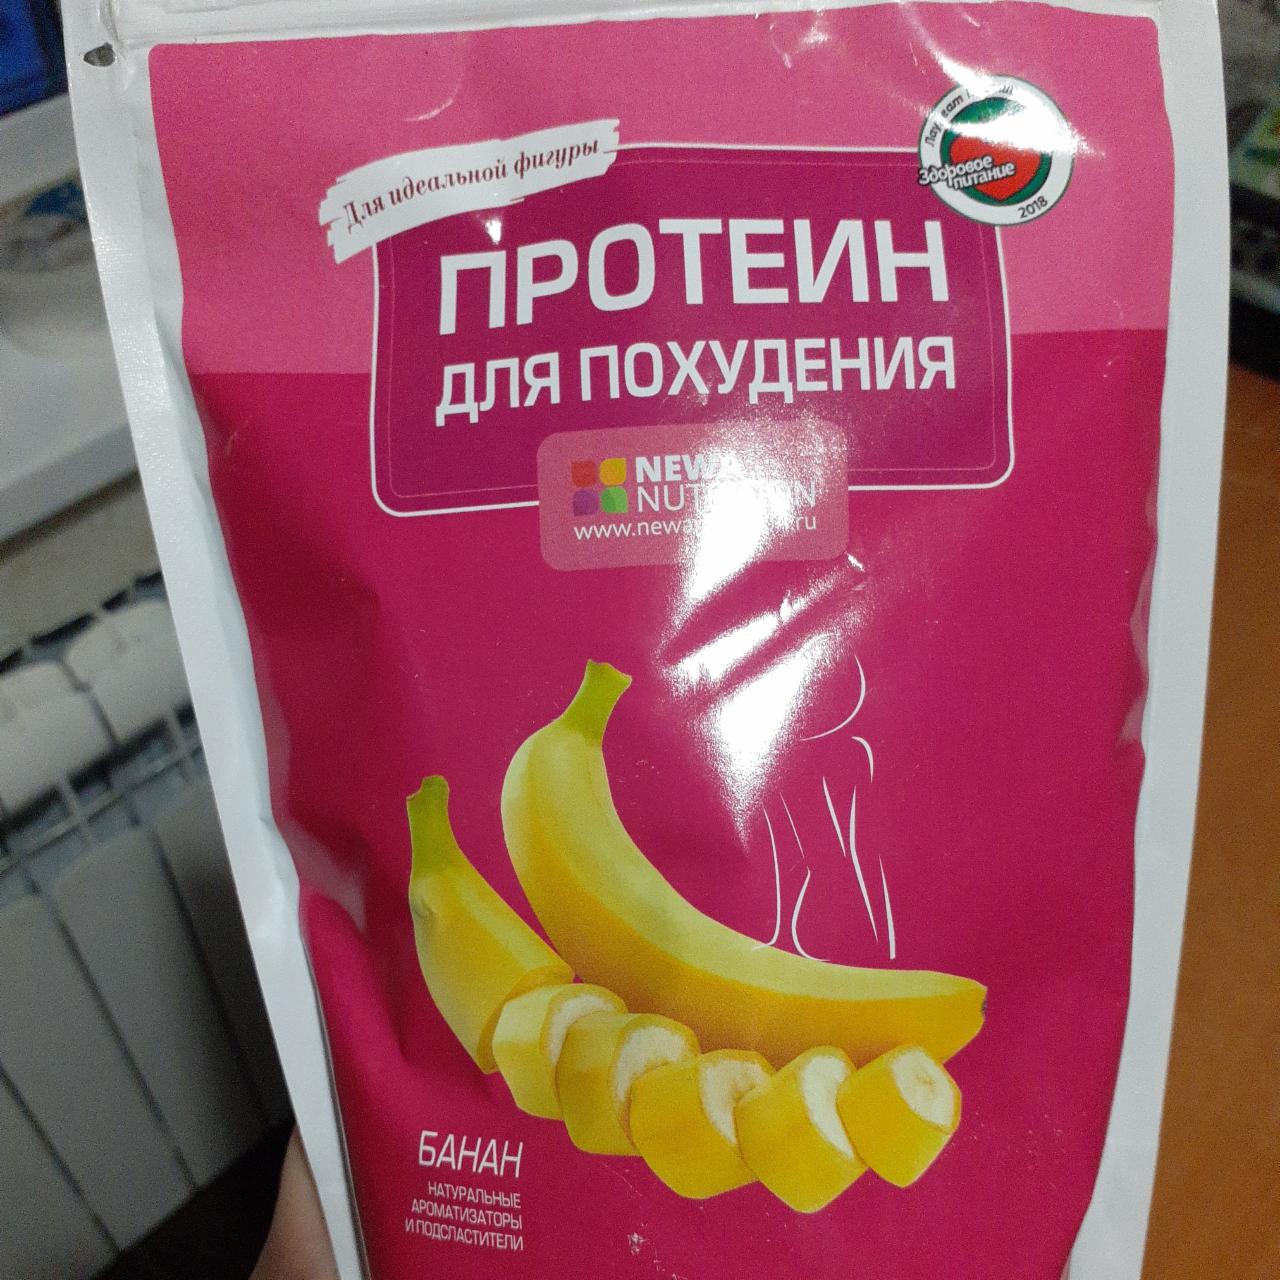 Фото - Протеин для похудения банановый Здоровое питание